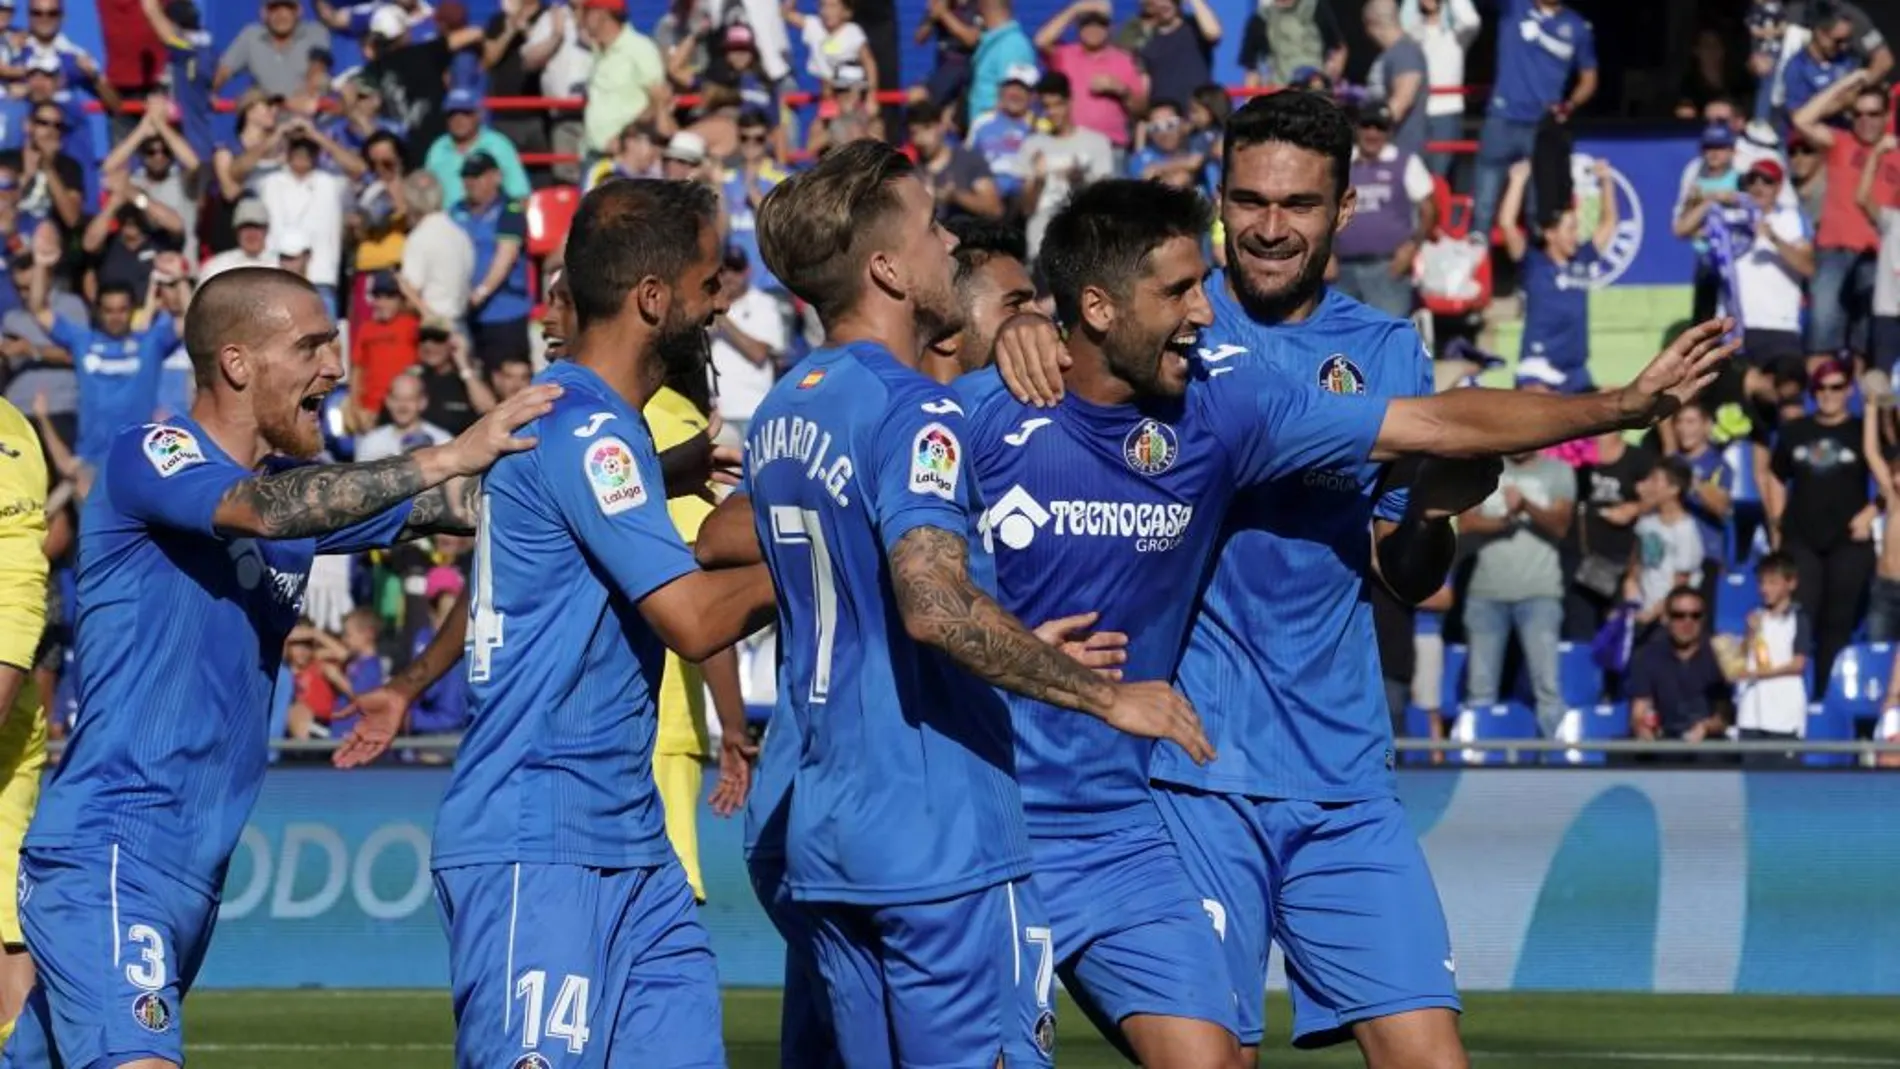 El centrocampista del Getafe Mikel Bergara celebra con sus compañeros su gol marcado ante el Villarreal, el tercero del conjunto azulón